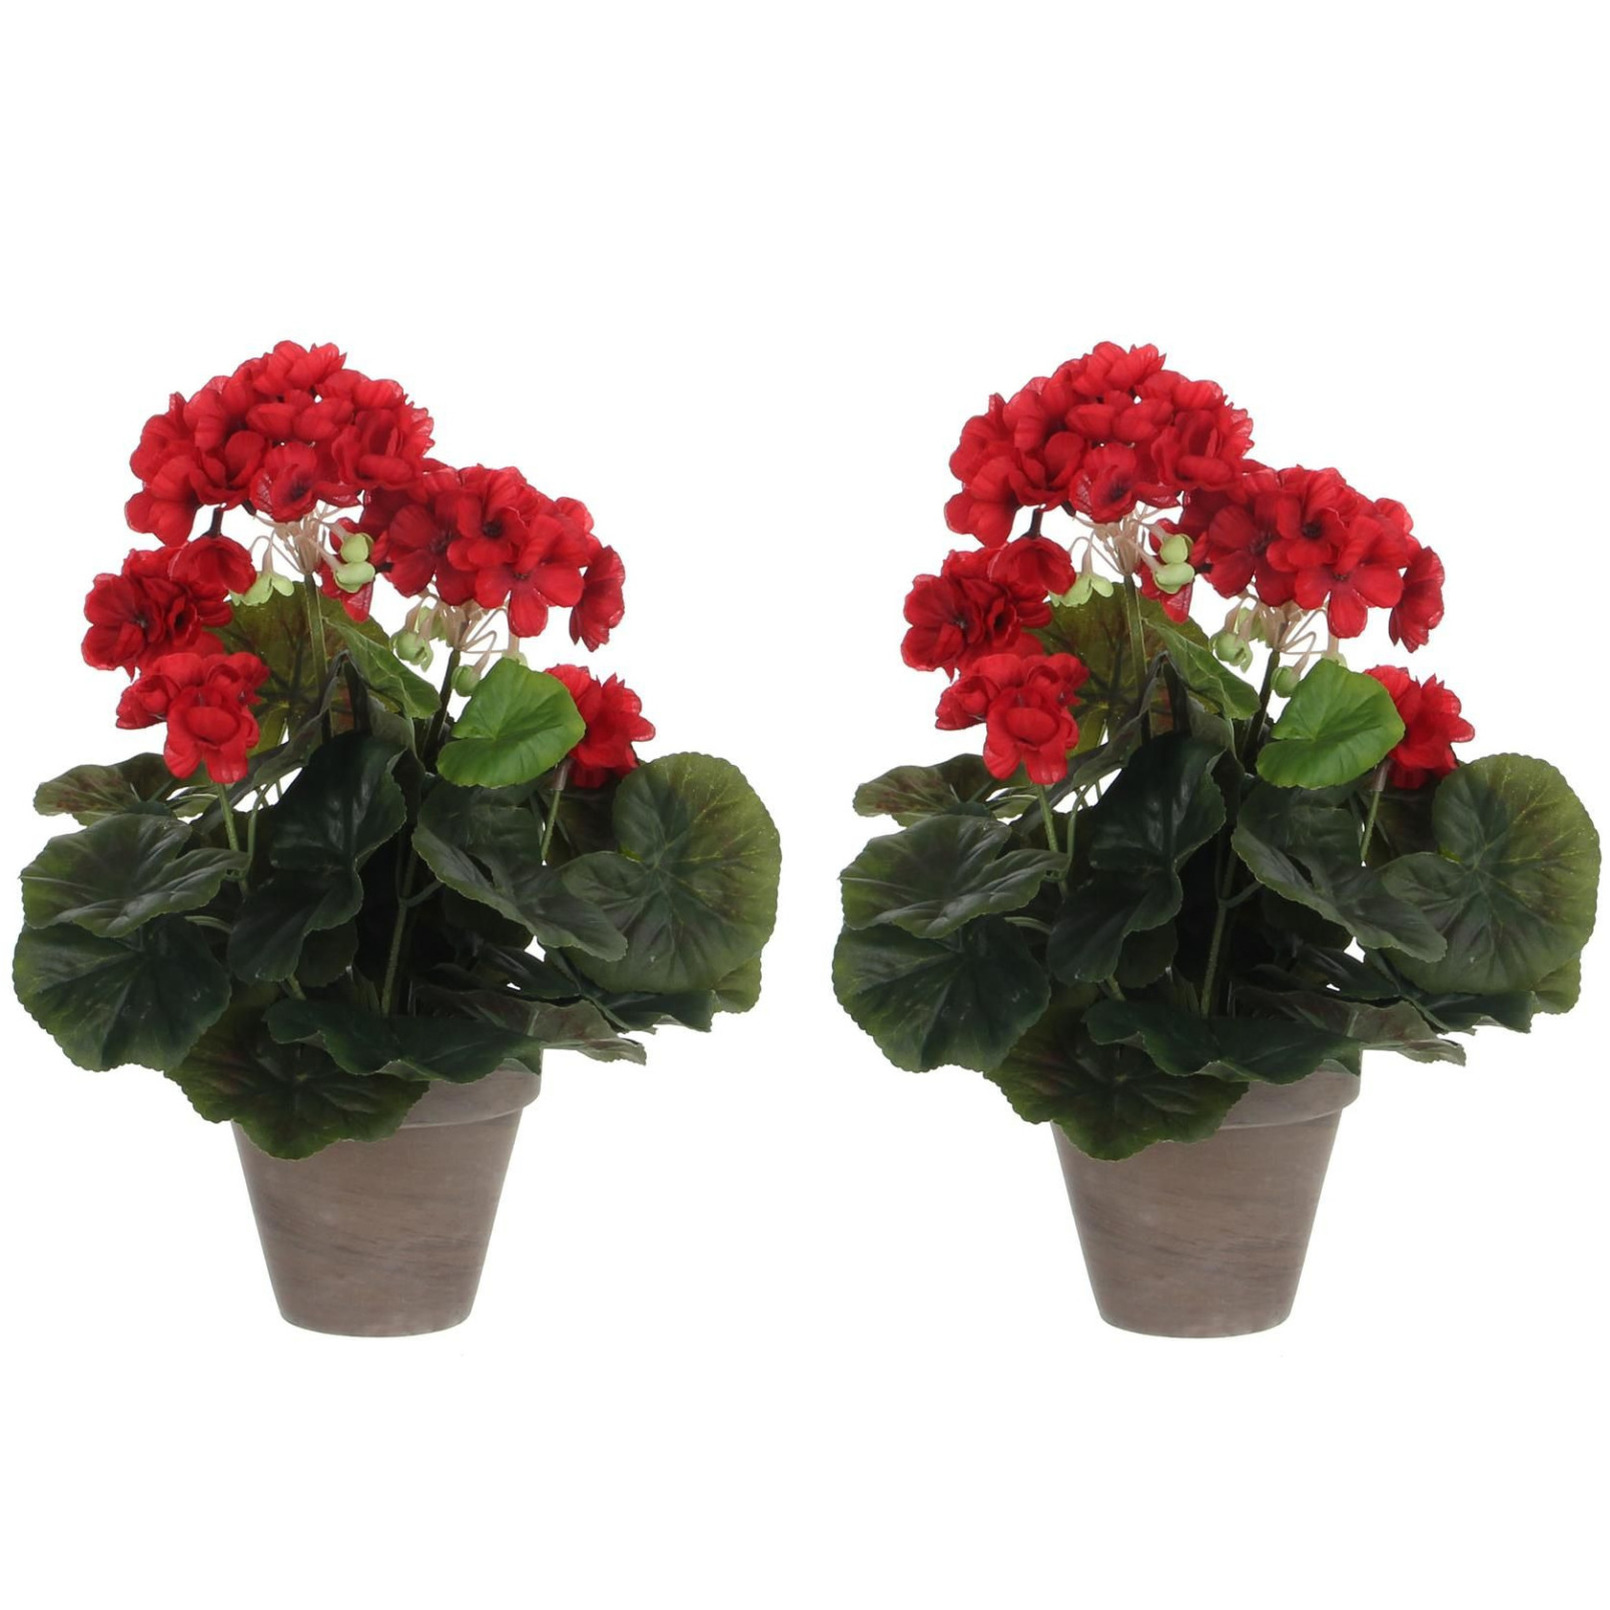 3x stuks geranium kunstplanten rood in keramieken pot H34 x D20 cm